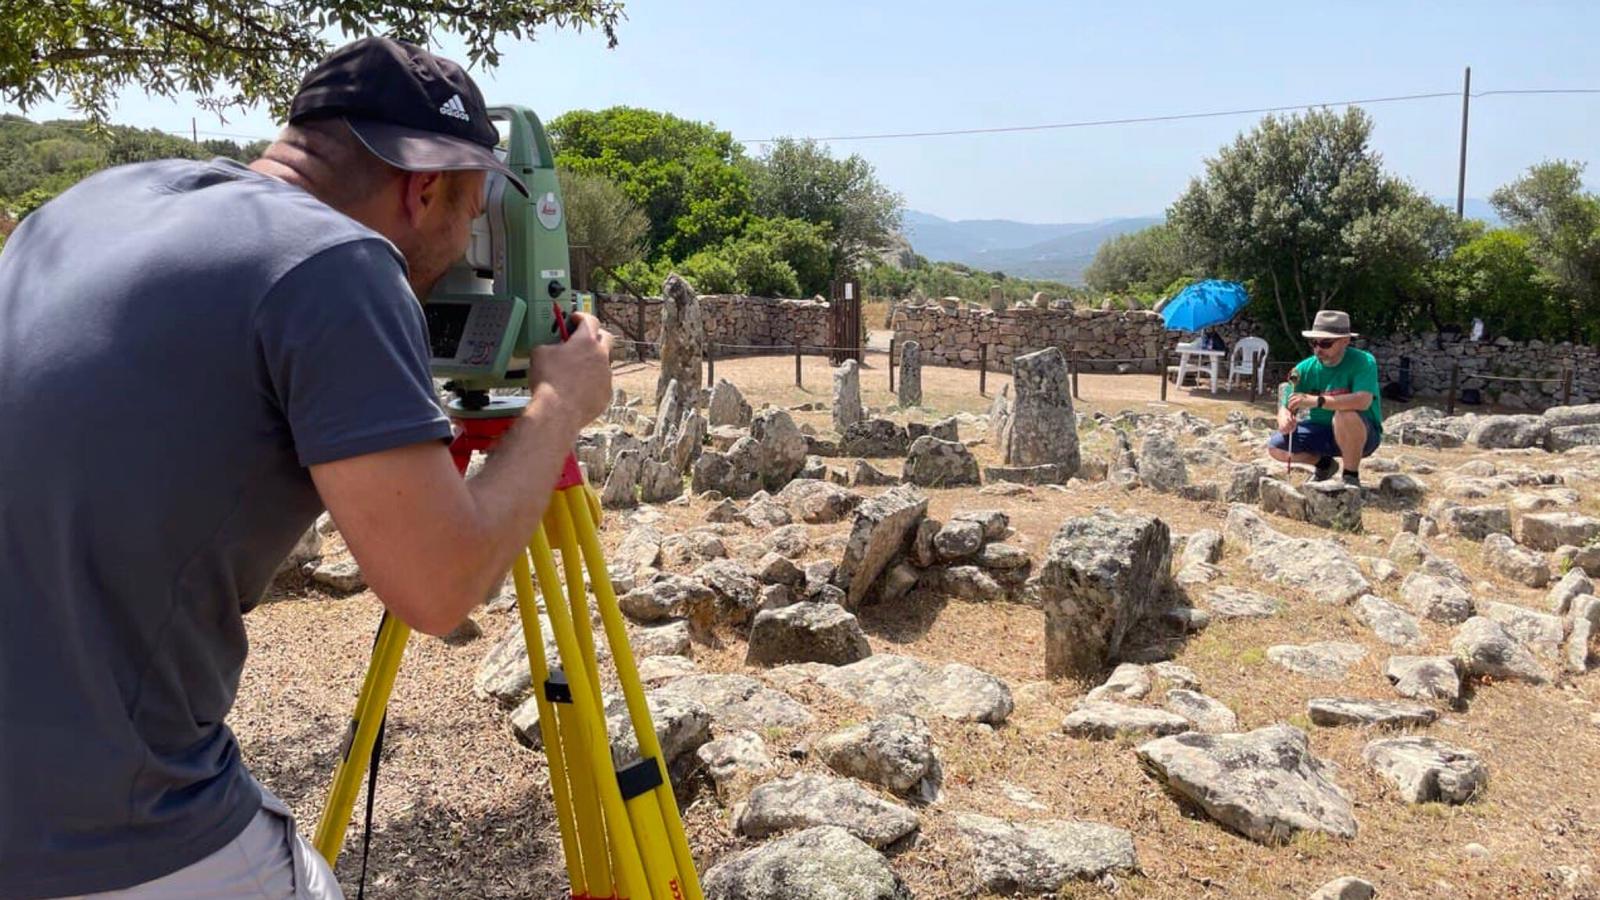 Arzachena partecipa alla Borsa Mediterranea del turismo archeologico di Paestum